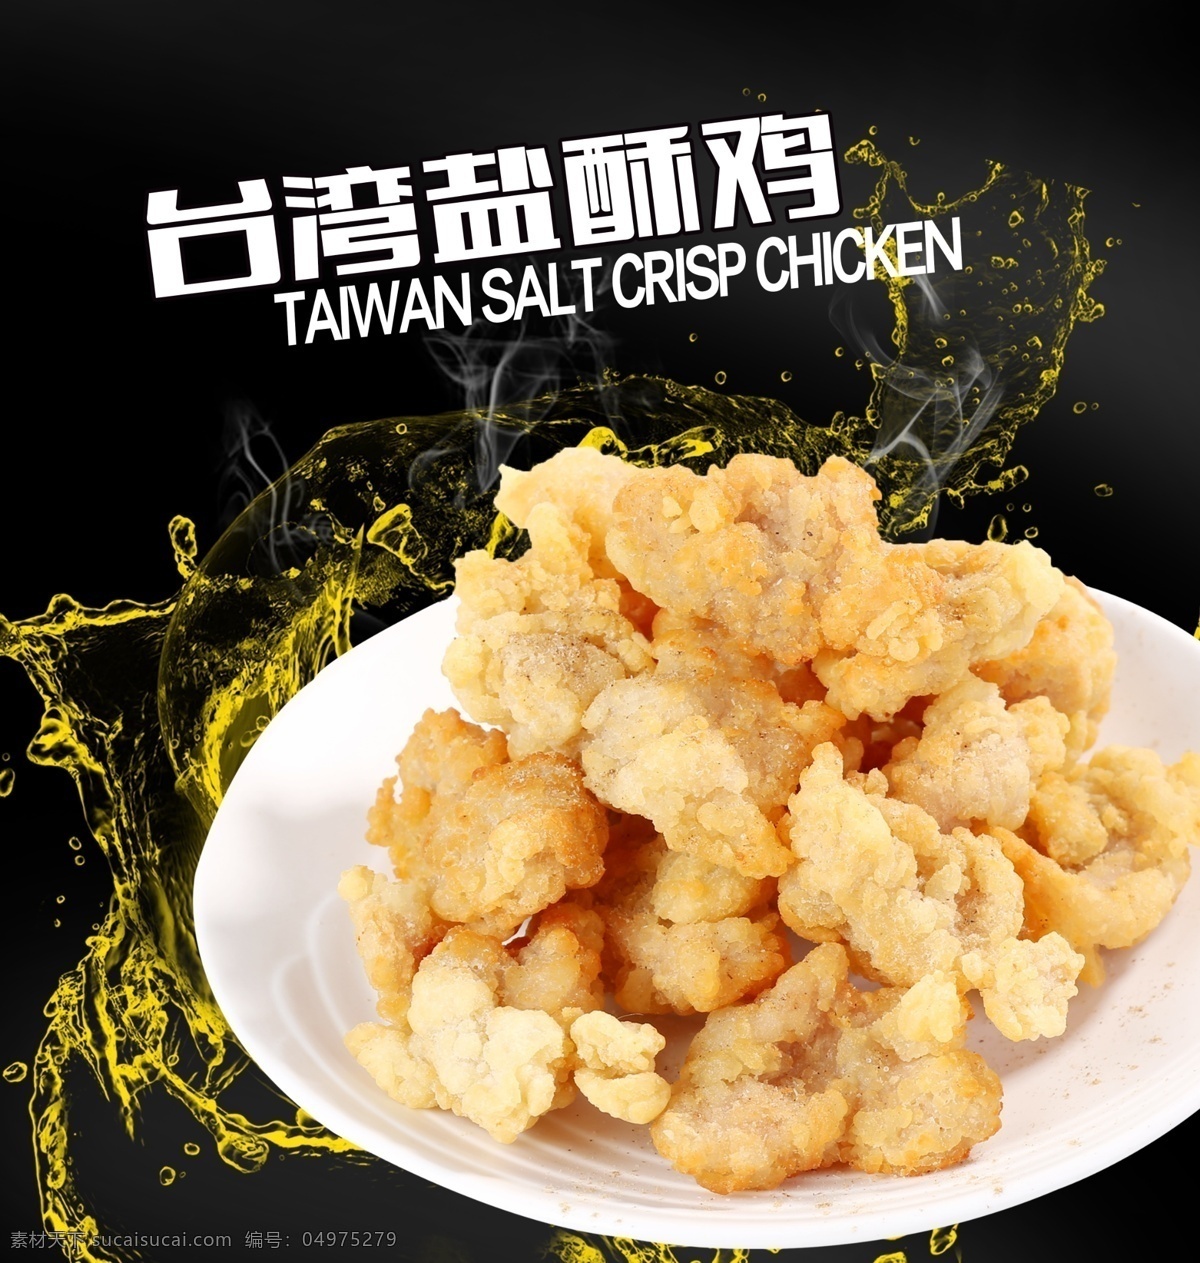 小吃 台湾盐酥鸡 好吃的 动力鸡车 菜单菜谱